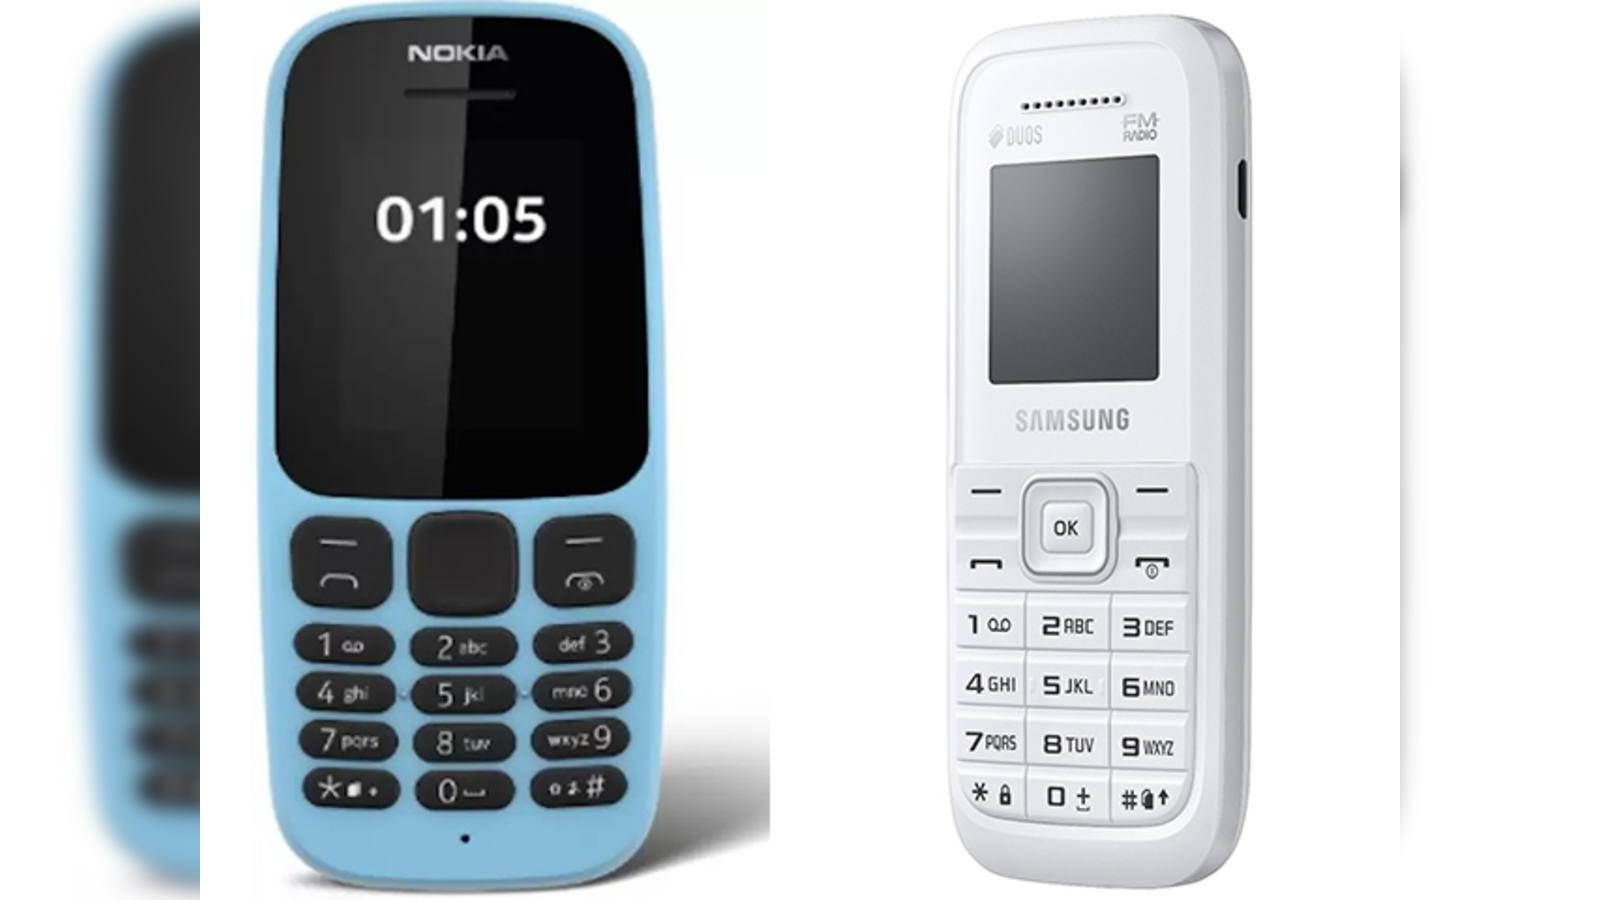 Nokia 105 mobile